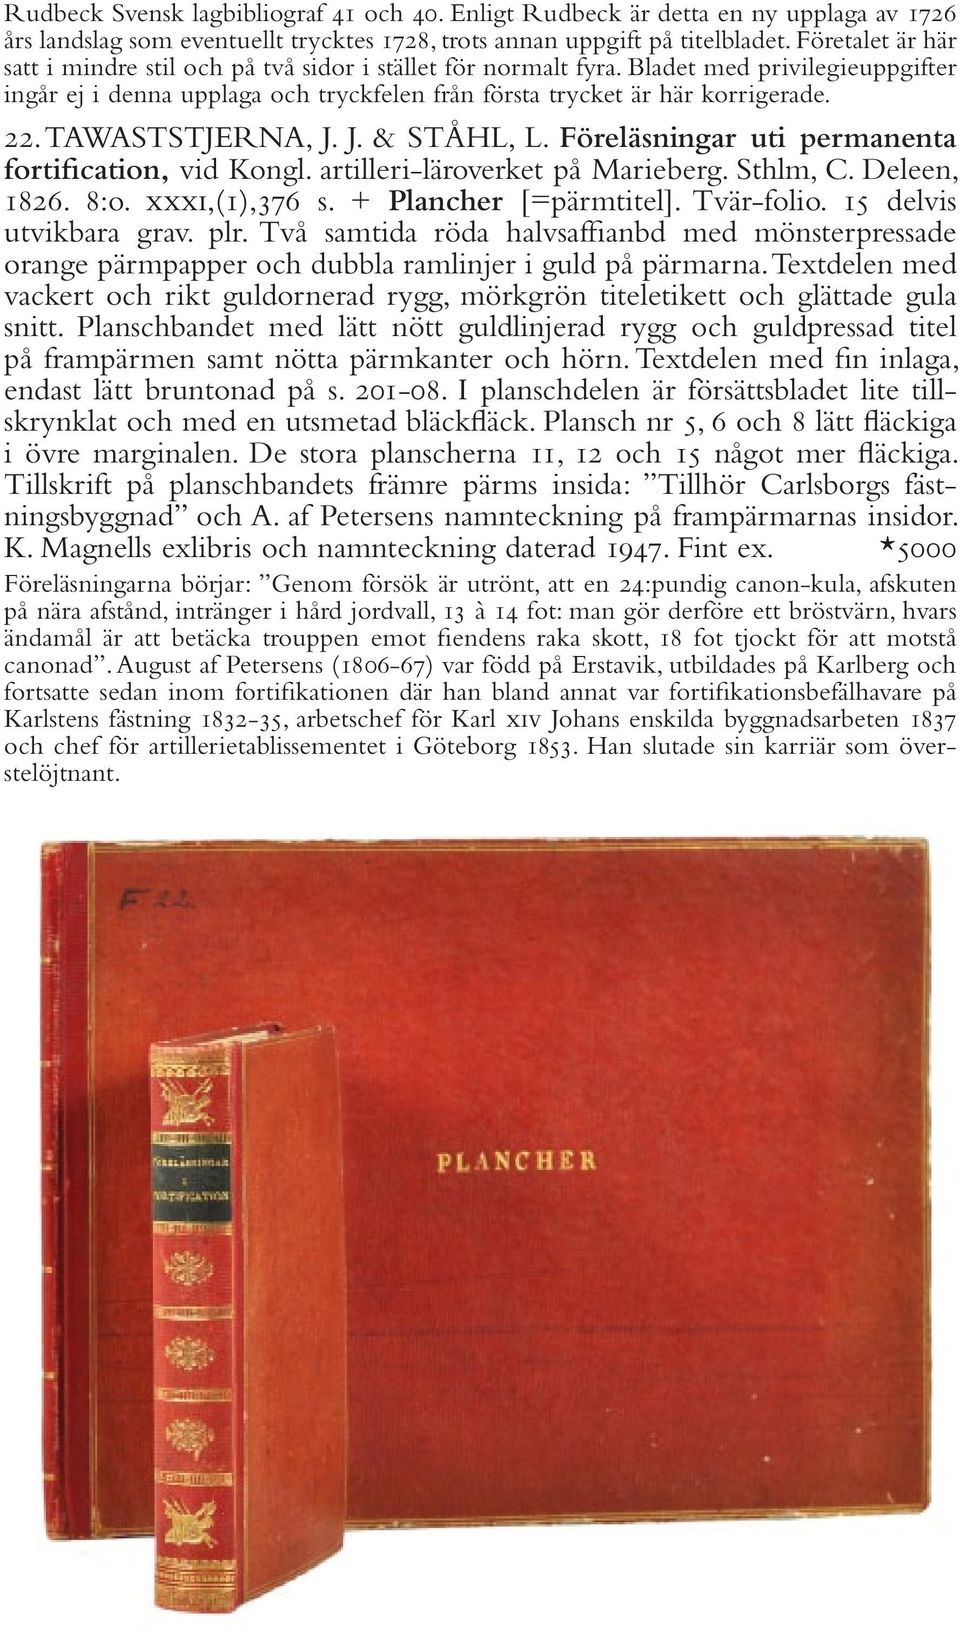 TAWASTSTJERNA, J. J. & STÅHL, L. Föreläsningar uti permanenta fortification, vid Kongl. artilleri-läroverket på Marieberg. Sthlm, C. Deleen, 1826. 8:o. xxxi,(1),376 s. + Plancher [=pärmtitel].